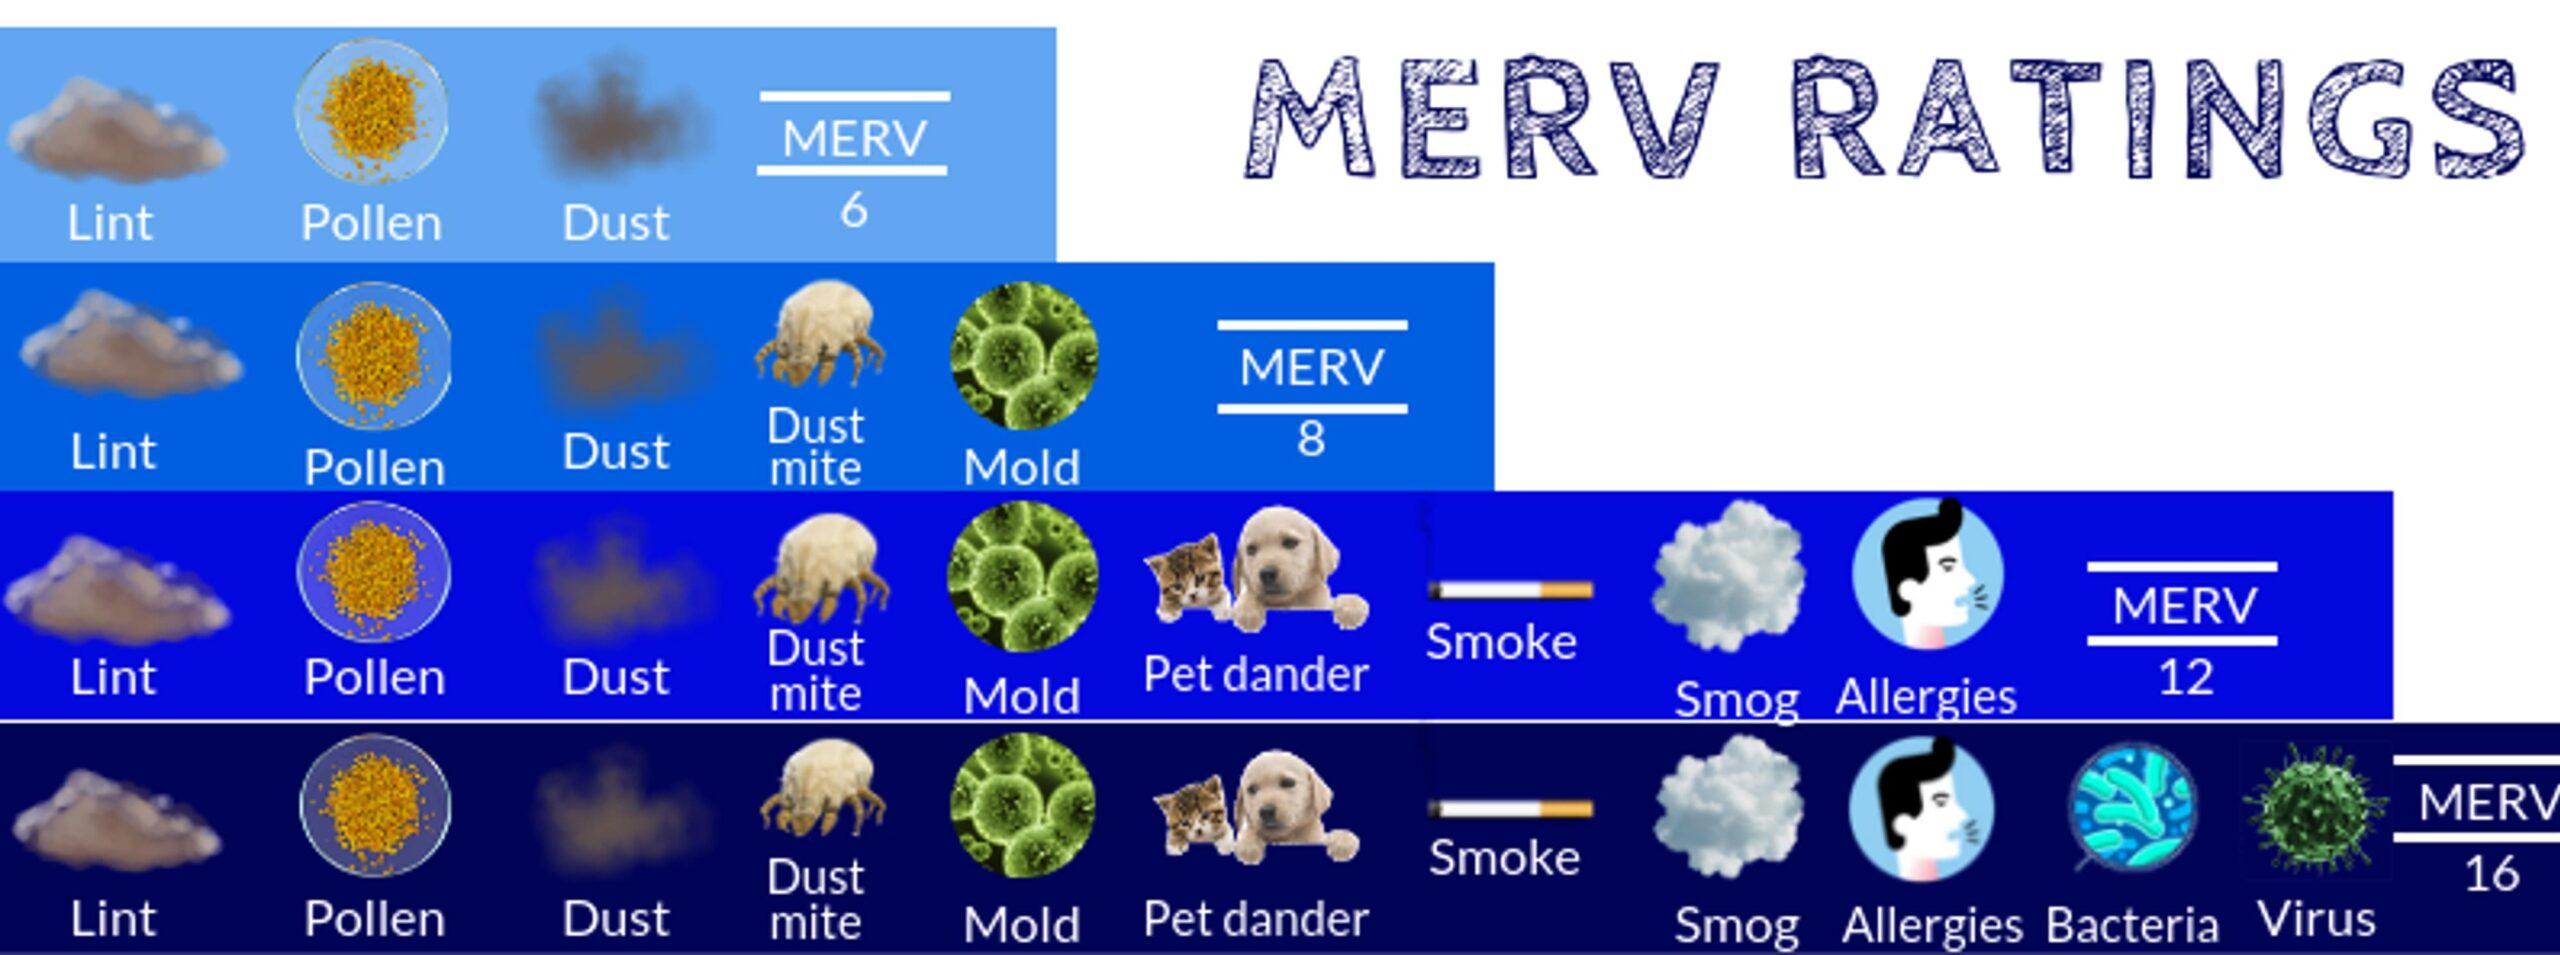 Merv-Rating